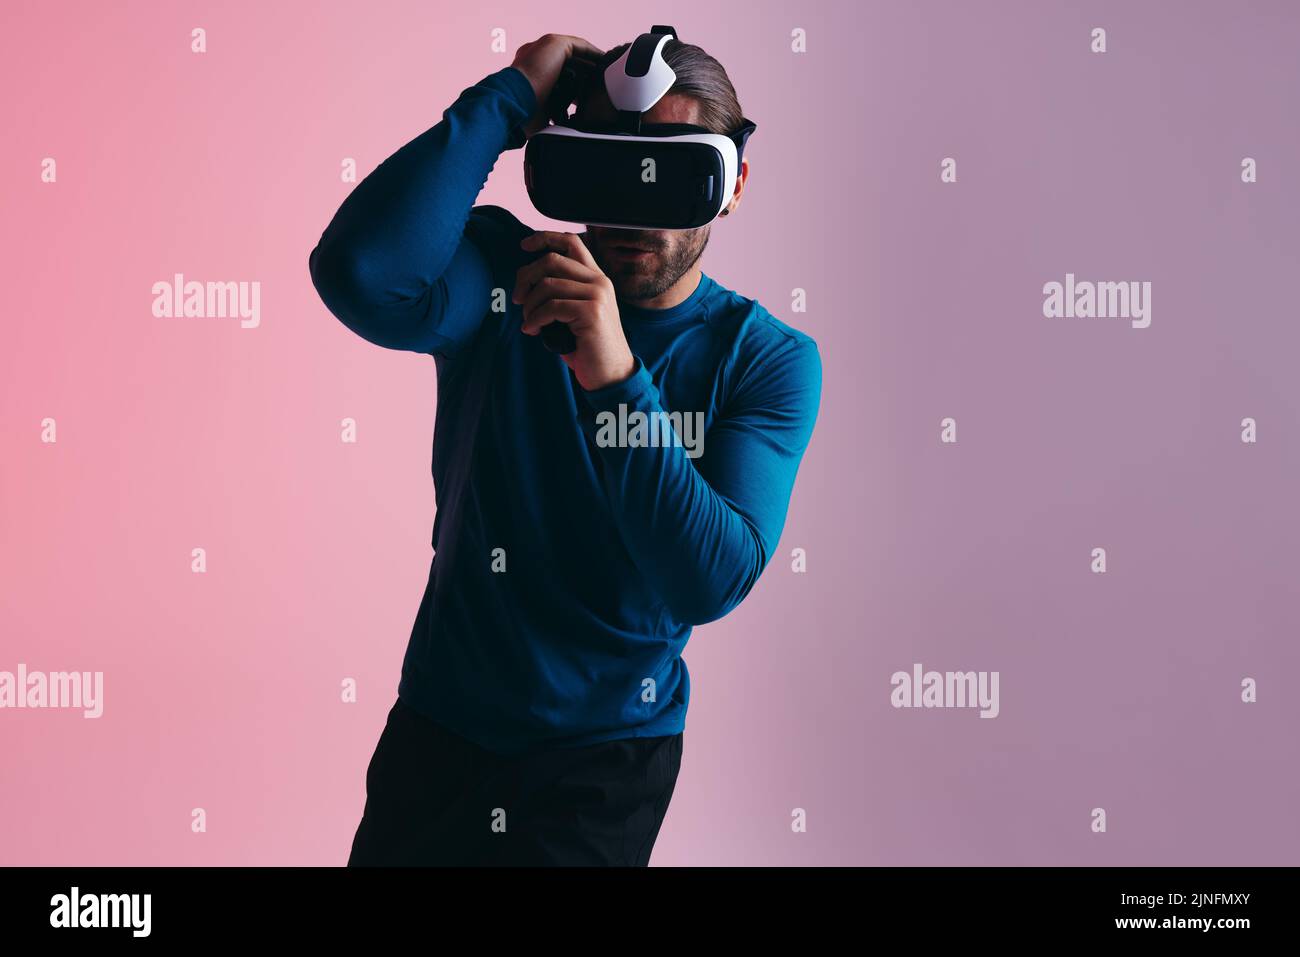 Boxen in der virtuellen Realität. Sportlicher junger Mann, der sich auf einen virtuellen Schlag vorbereitet, während er eine Virtual-Reality-Schutzbrille trägt. Aktiver junger Mann, der virtuelles Re erforscht Stockfoto